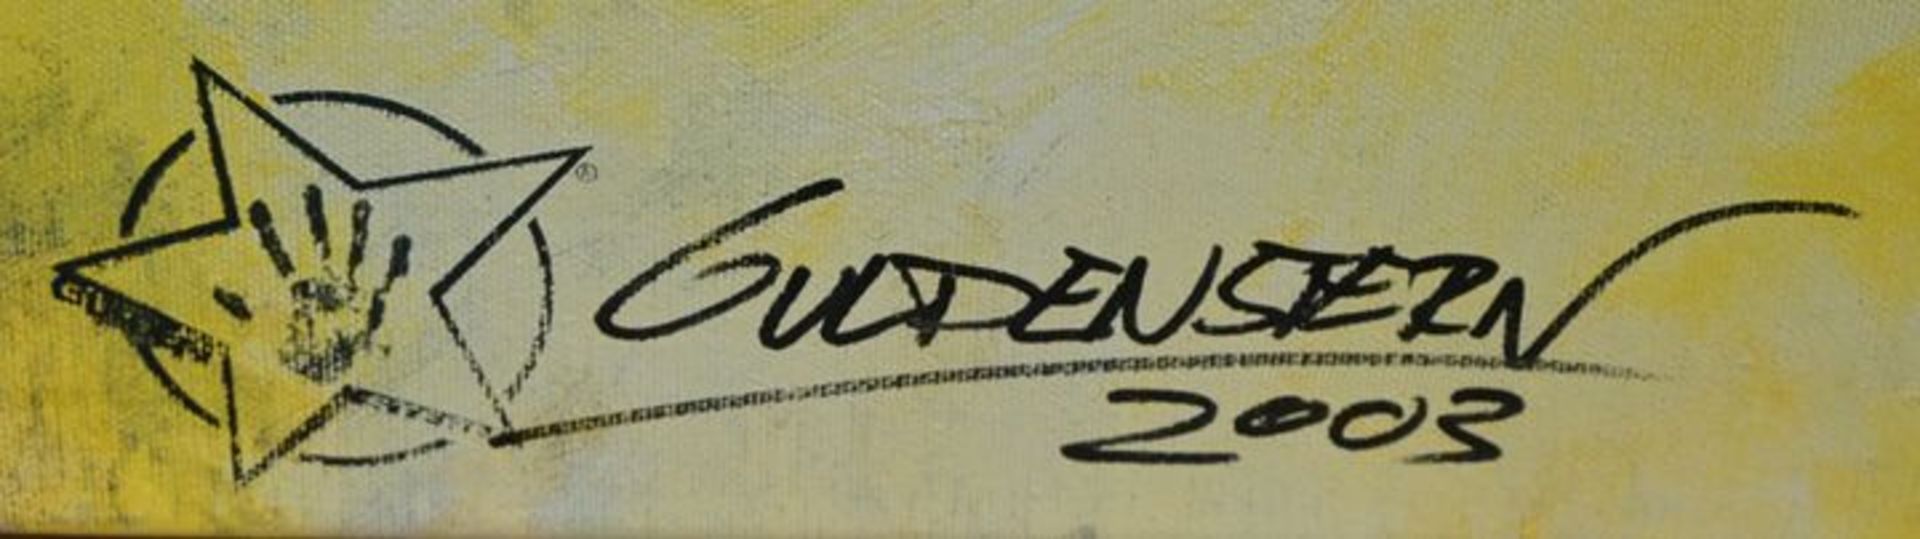 Guldenstern, Pop Art - Image 2 of 5